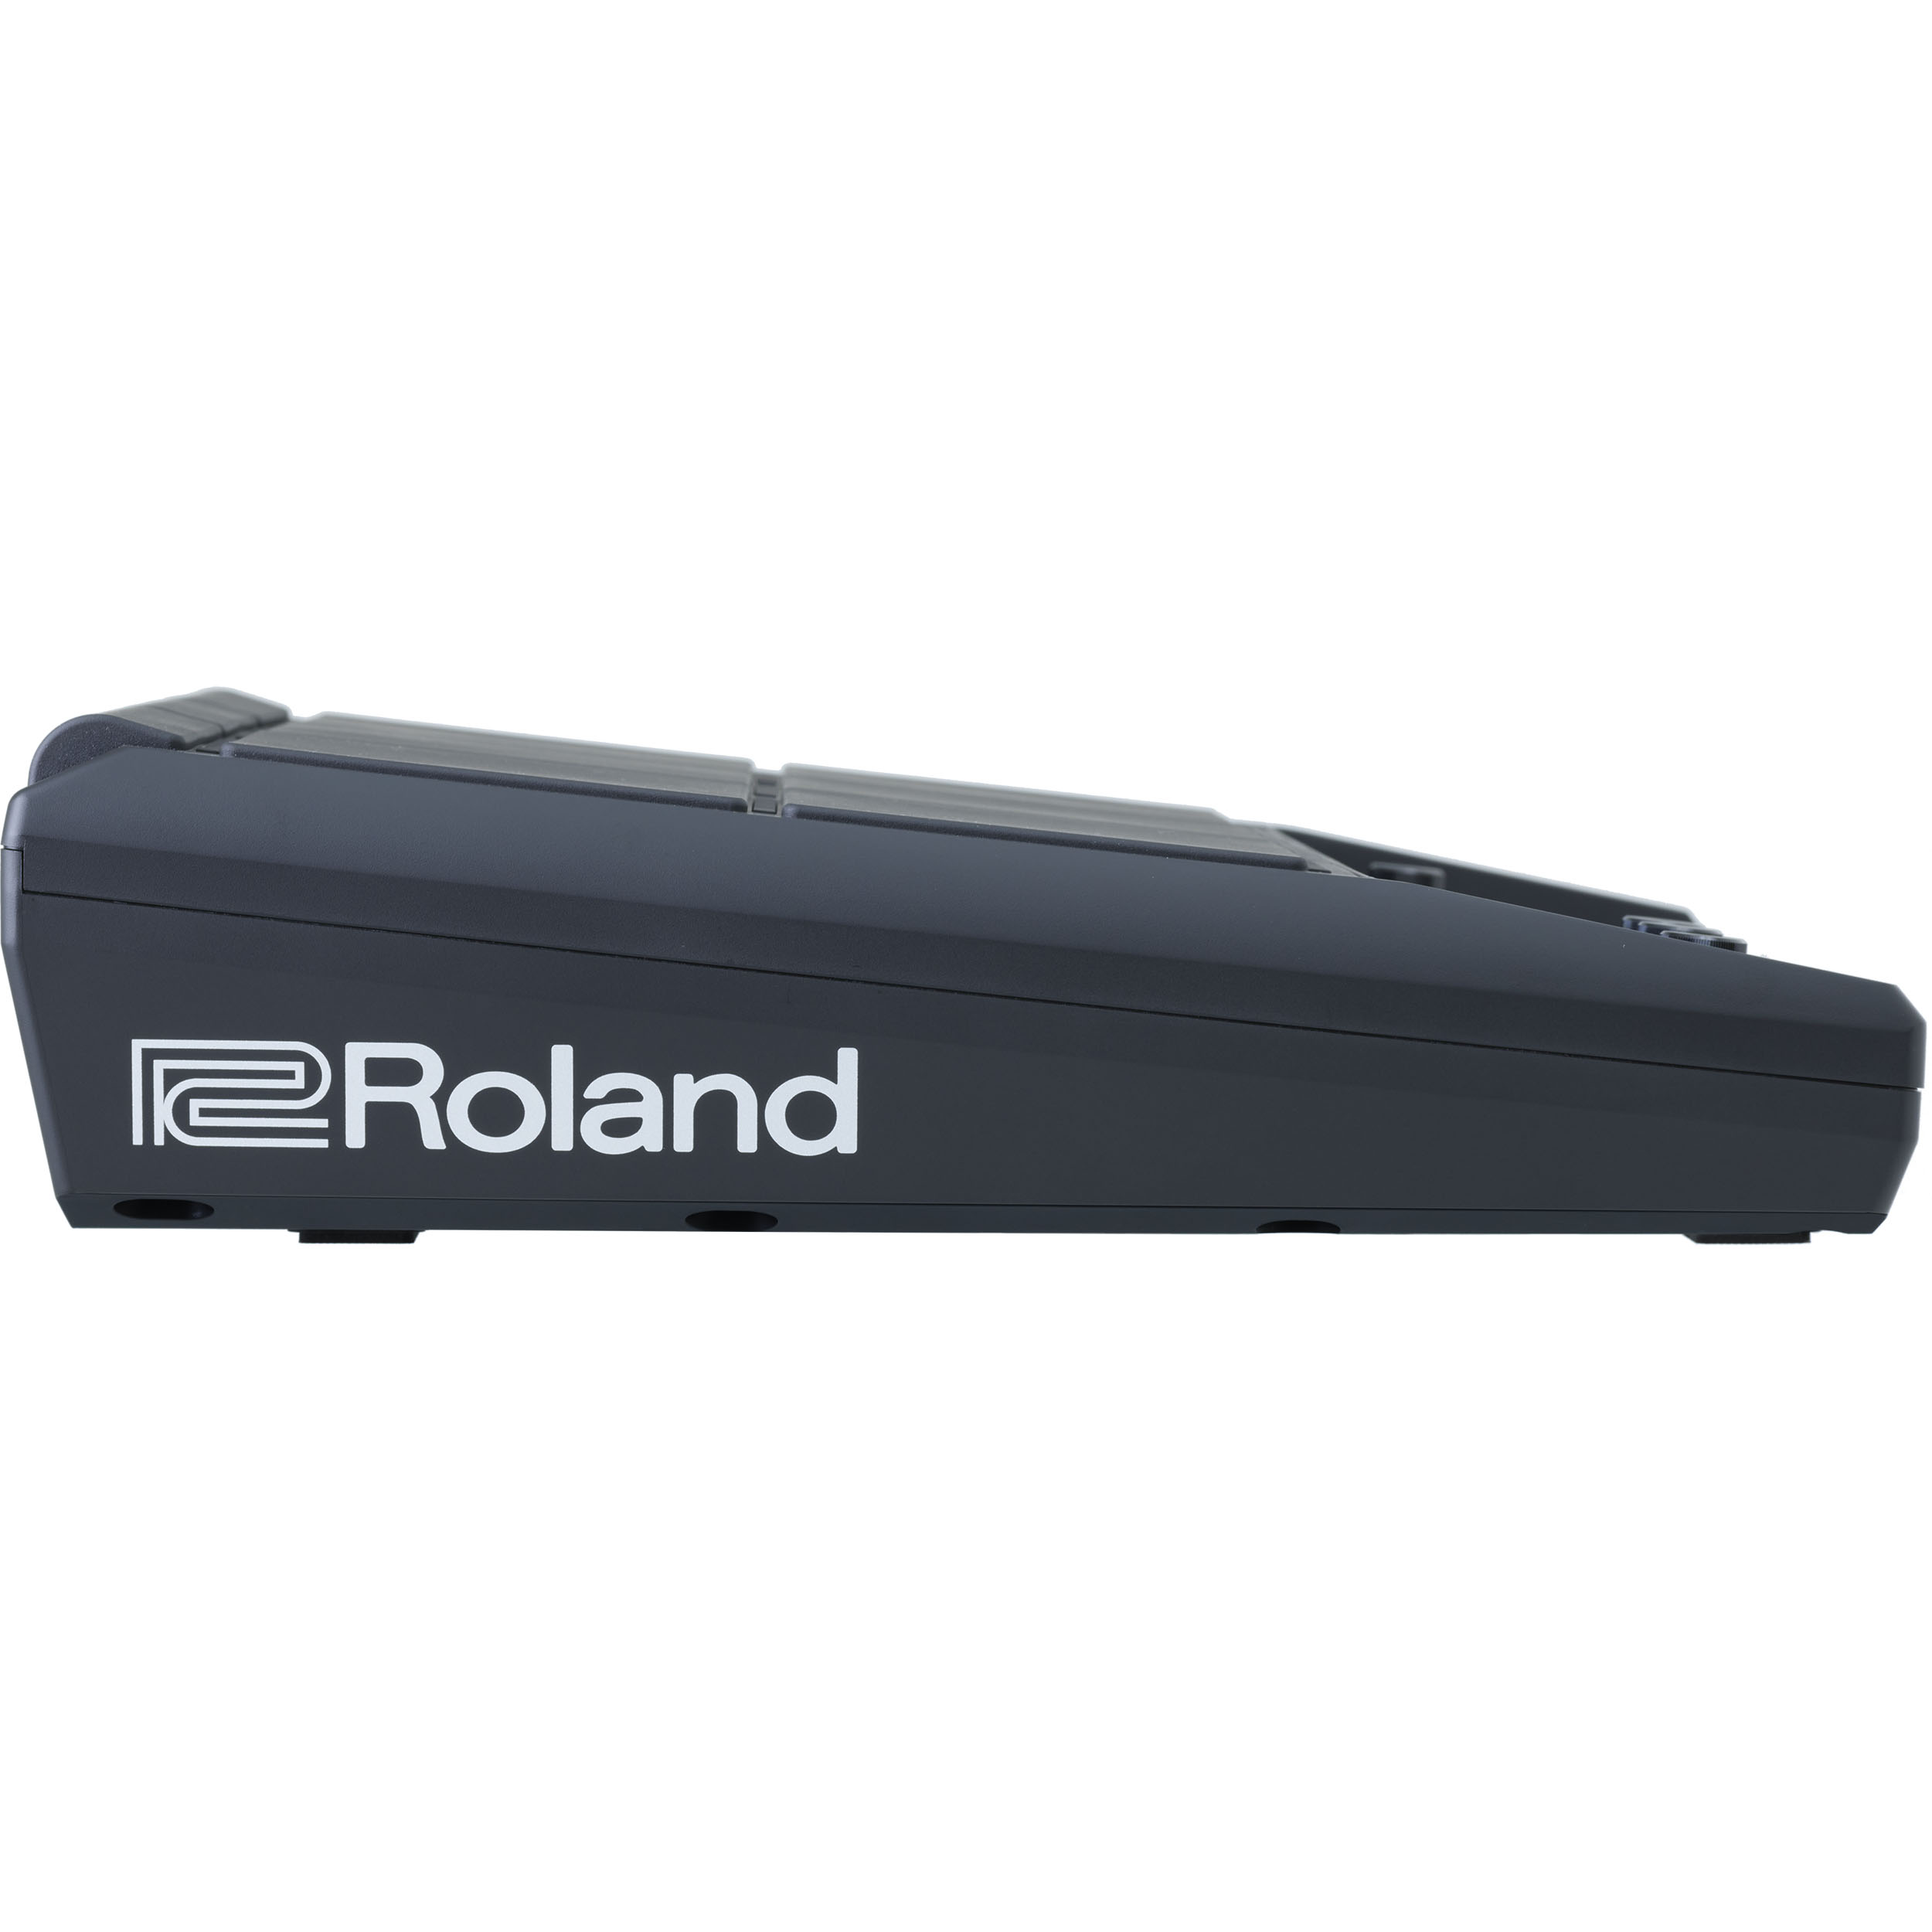 Roland Spd-sx Pro - Multi pad para batería electrónica - Variation 2